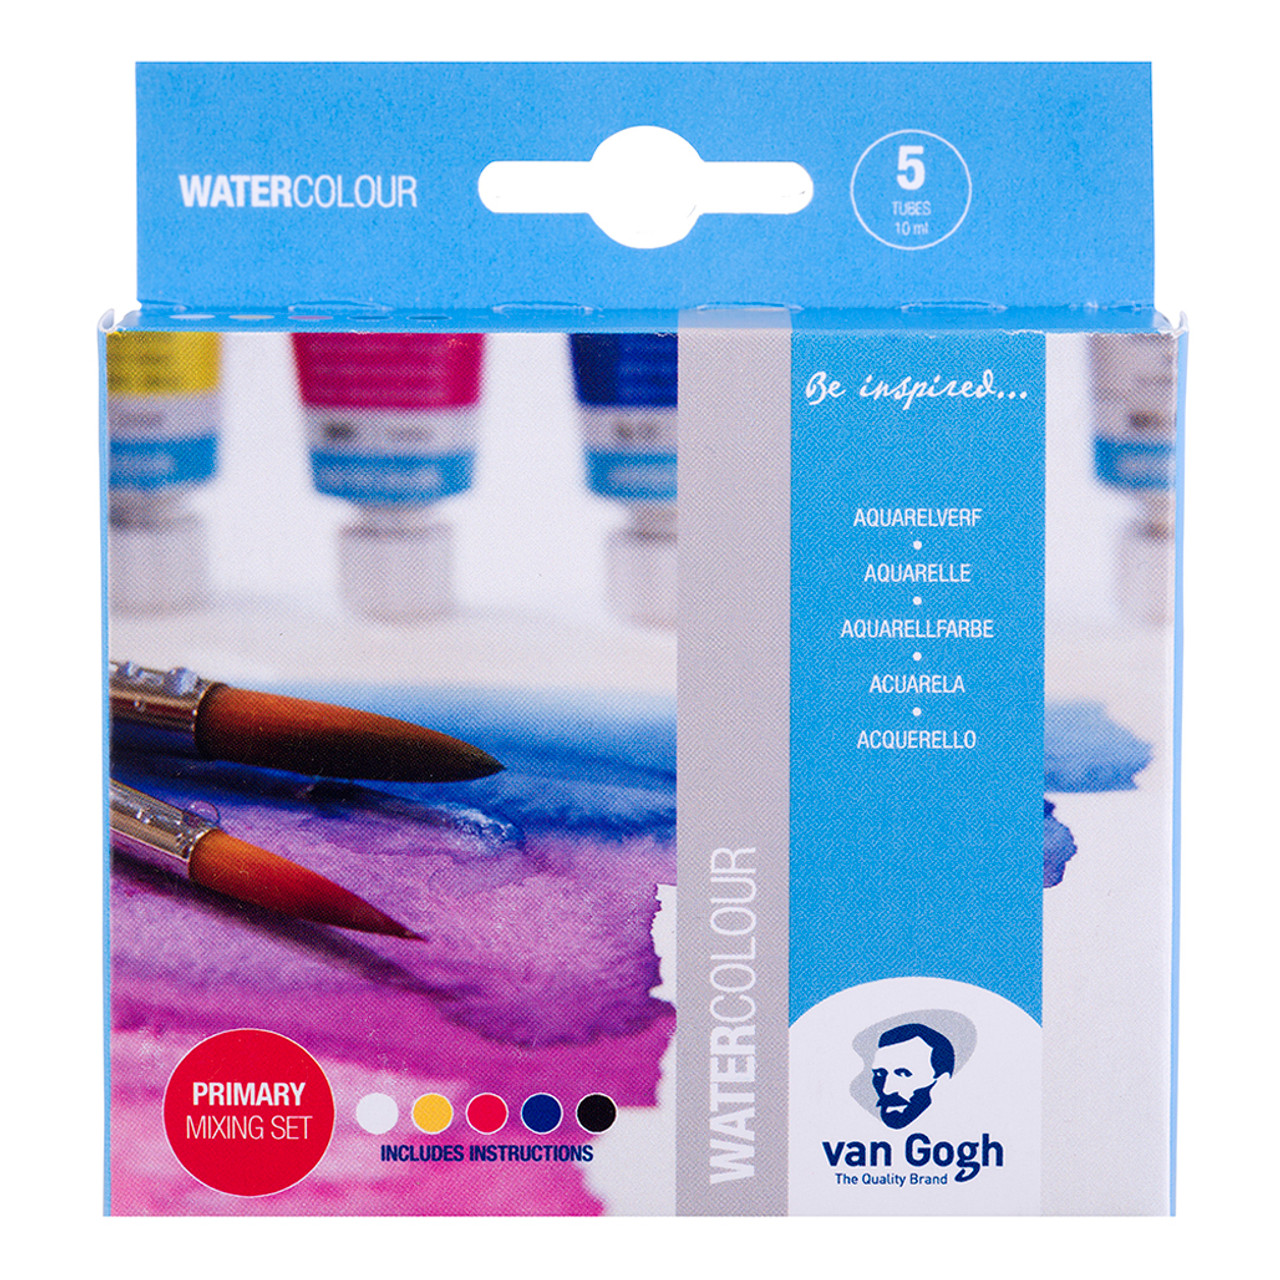 Van Gogh Watercolor Tubes and Sets